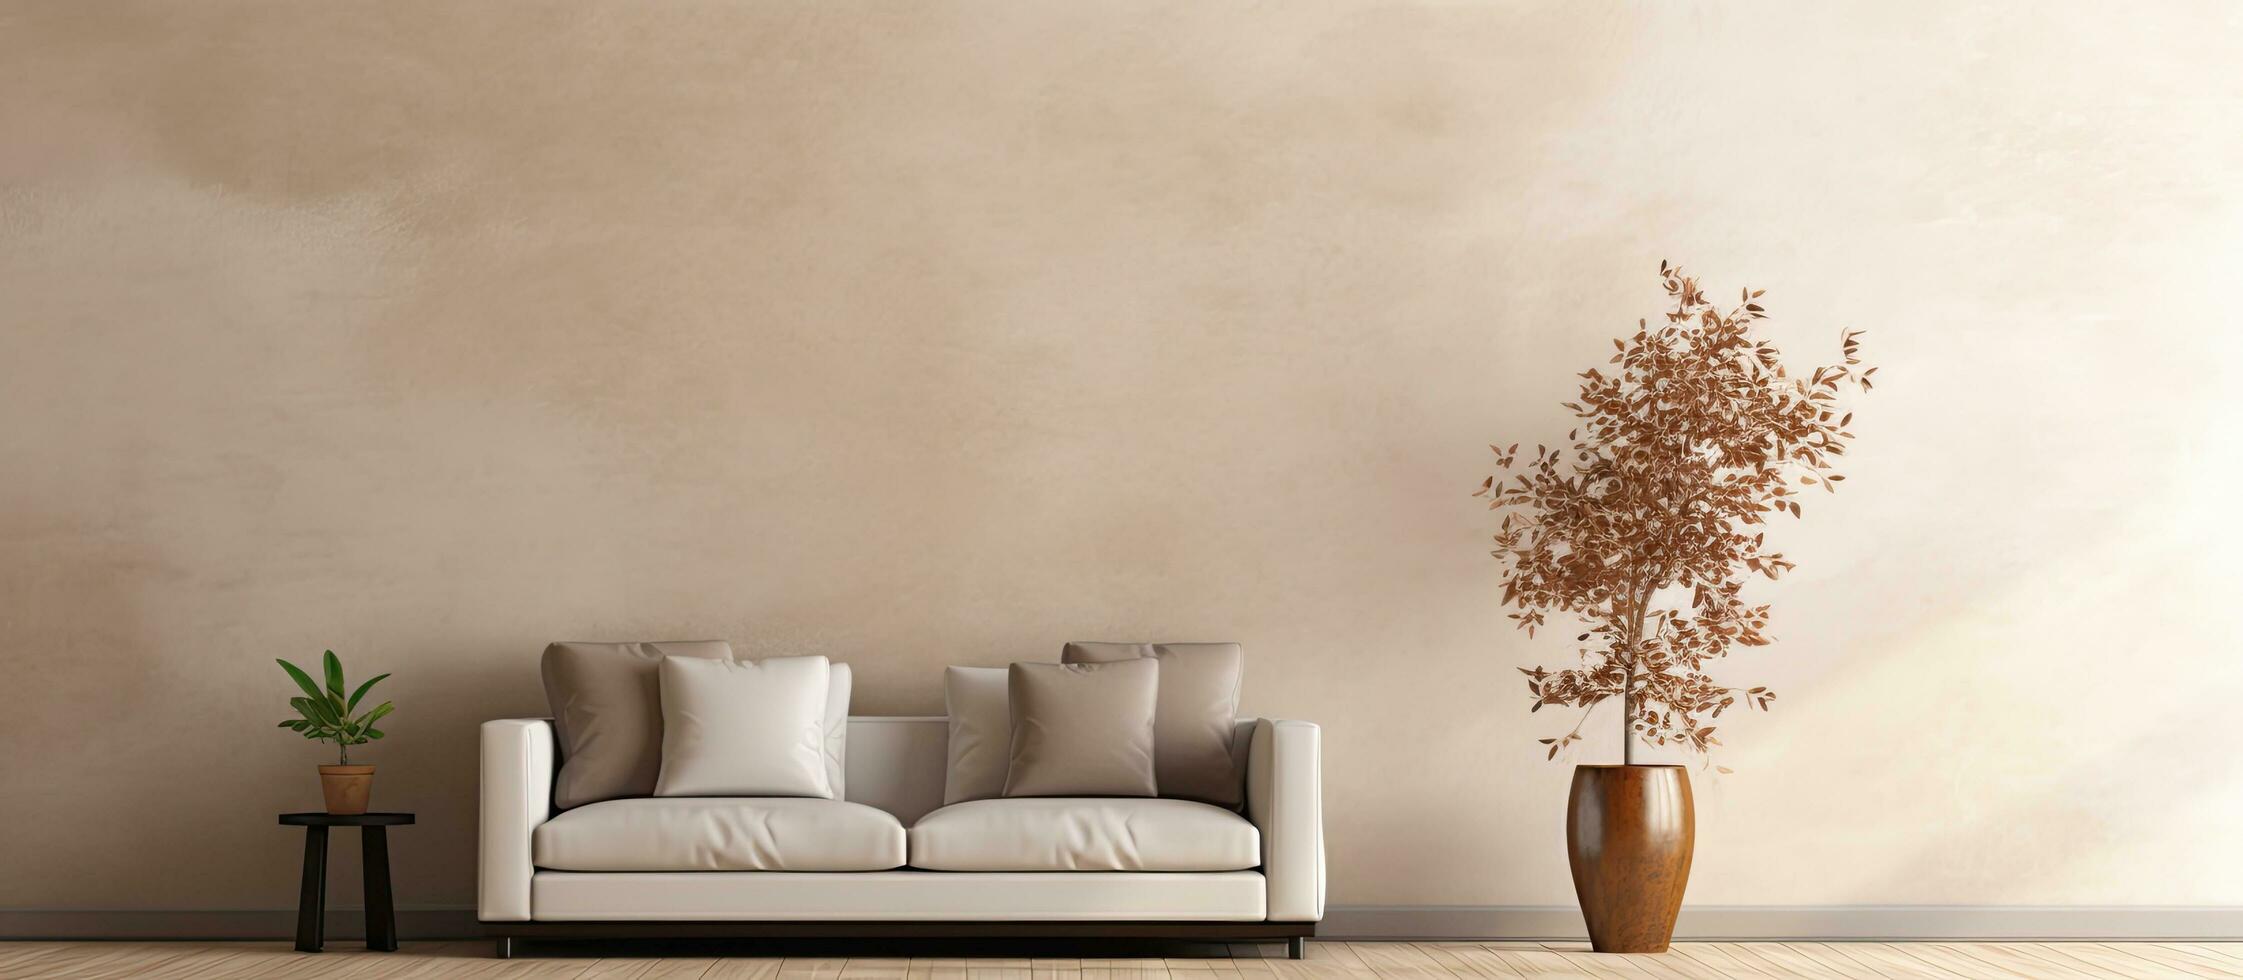 Vorlage zum ein minimalistisch Zuhause Dekor mit ein Beige Sofa, Seite Tisch, Blatt im ein Vase, Puff, elegant foto